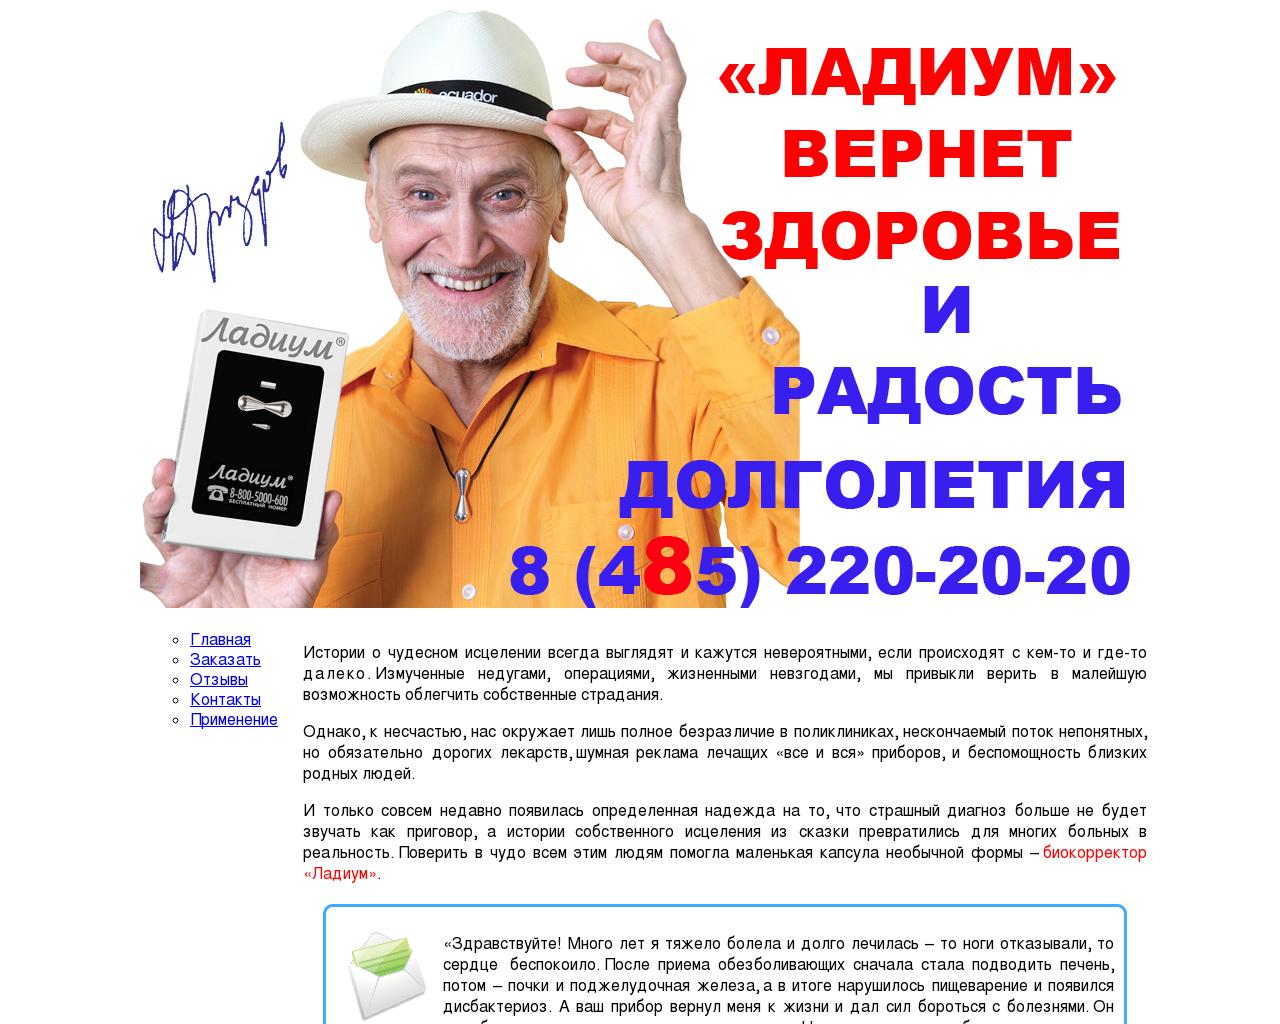 Изображение сайта ladium.ru в разрешении 1280x1024